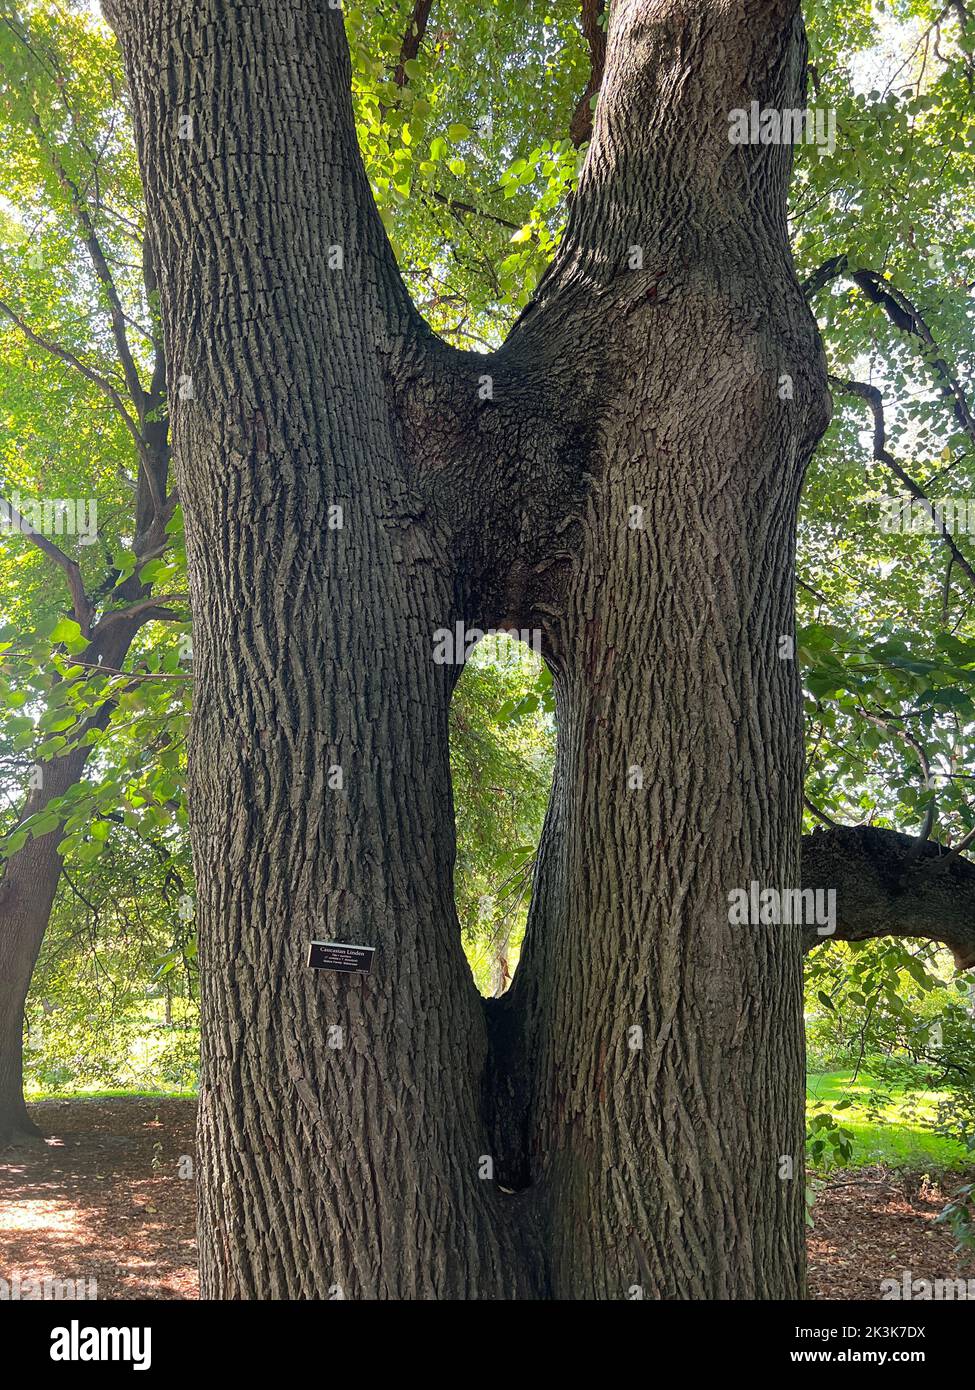 Unico albero di Linden caucasico in cui due tronchi sono cresciuti insieme per il sostegno reciproco. Prospet Park, Brooklyn, New York. Foto Stock